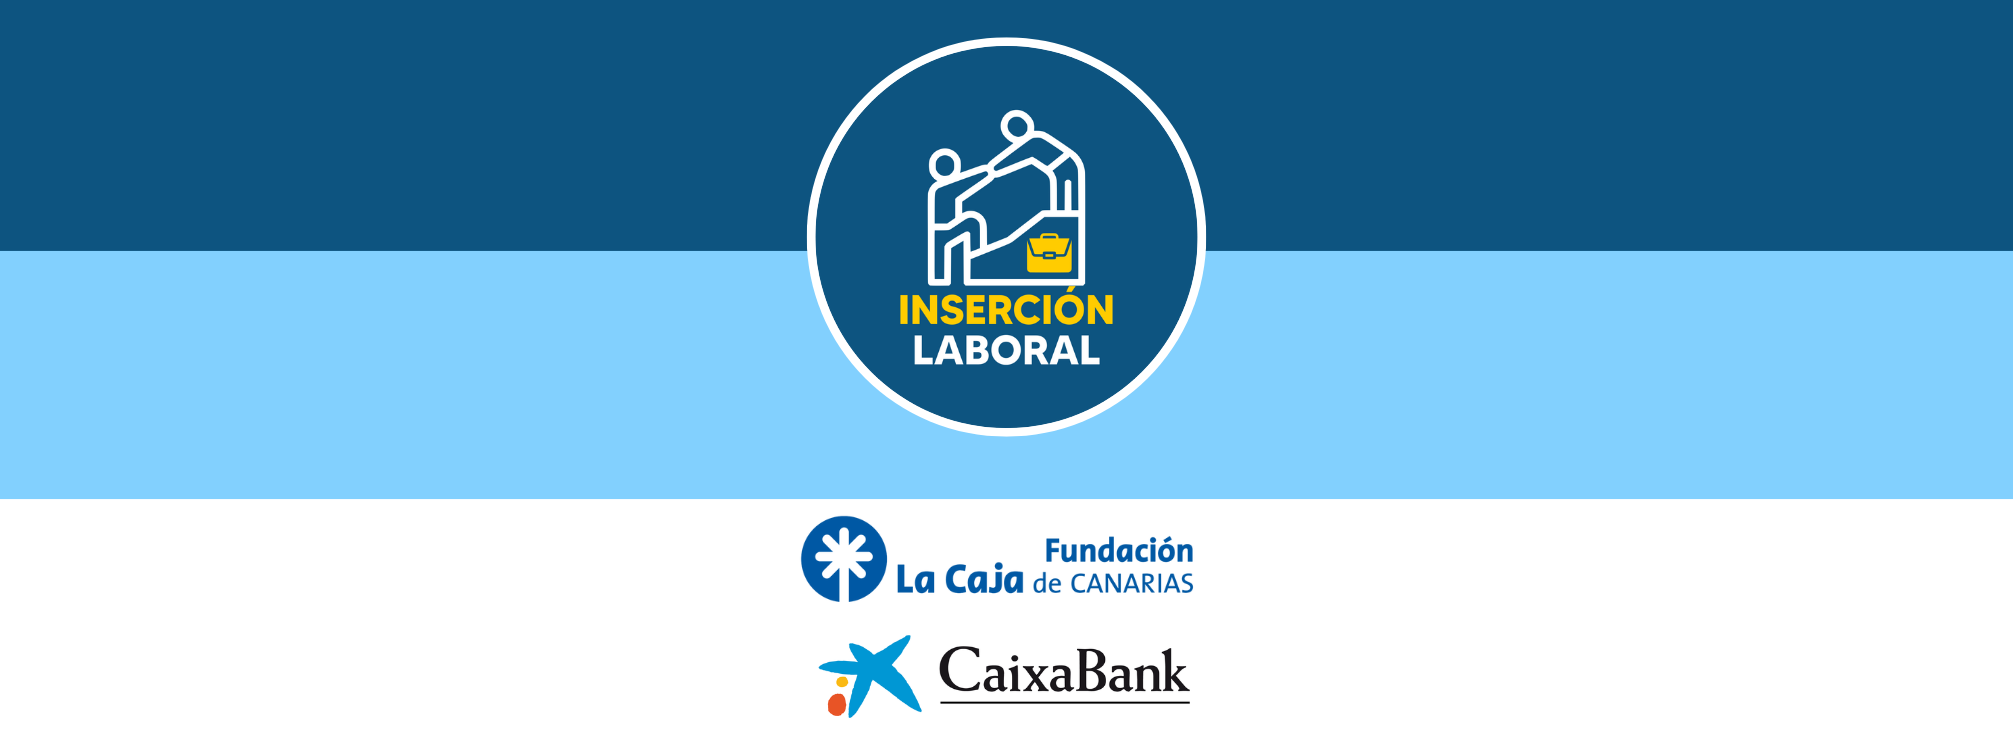 Subvención a Inserción Laboral con La Caja de Canarias y Caixabank